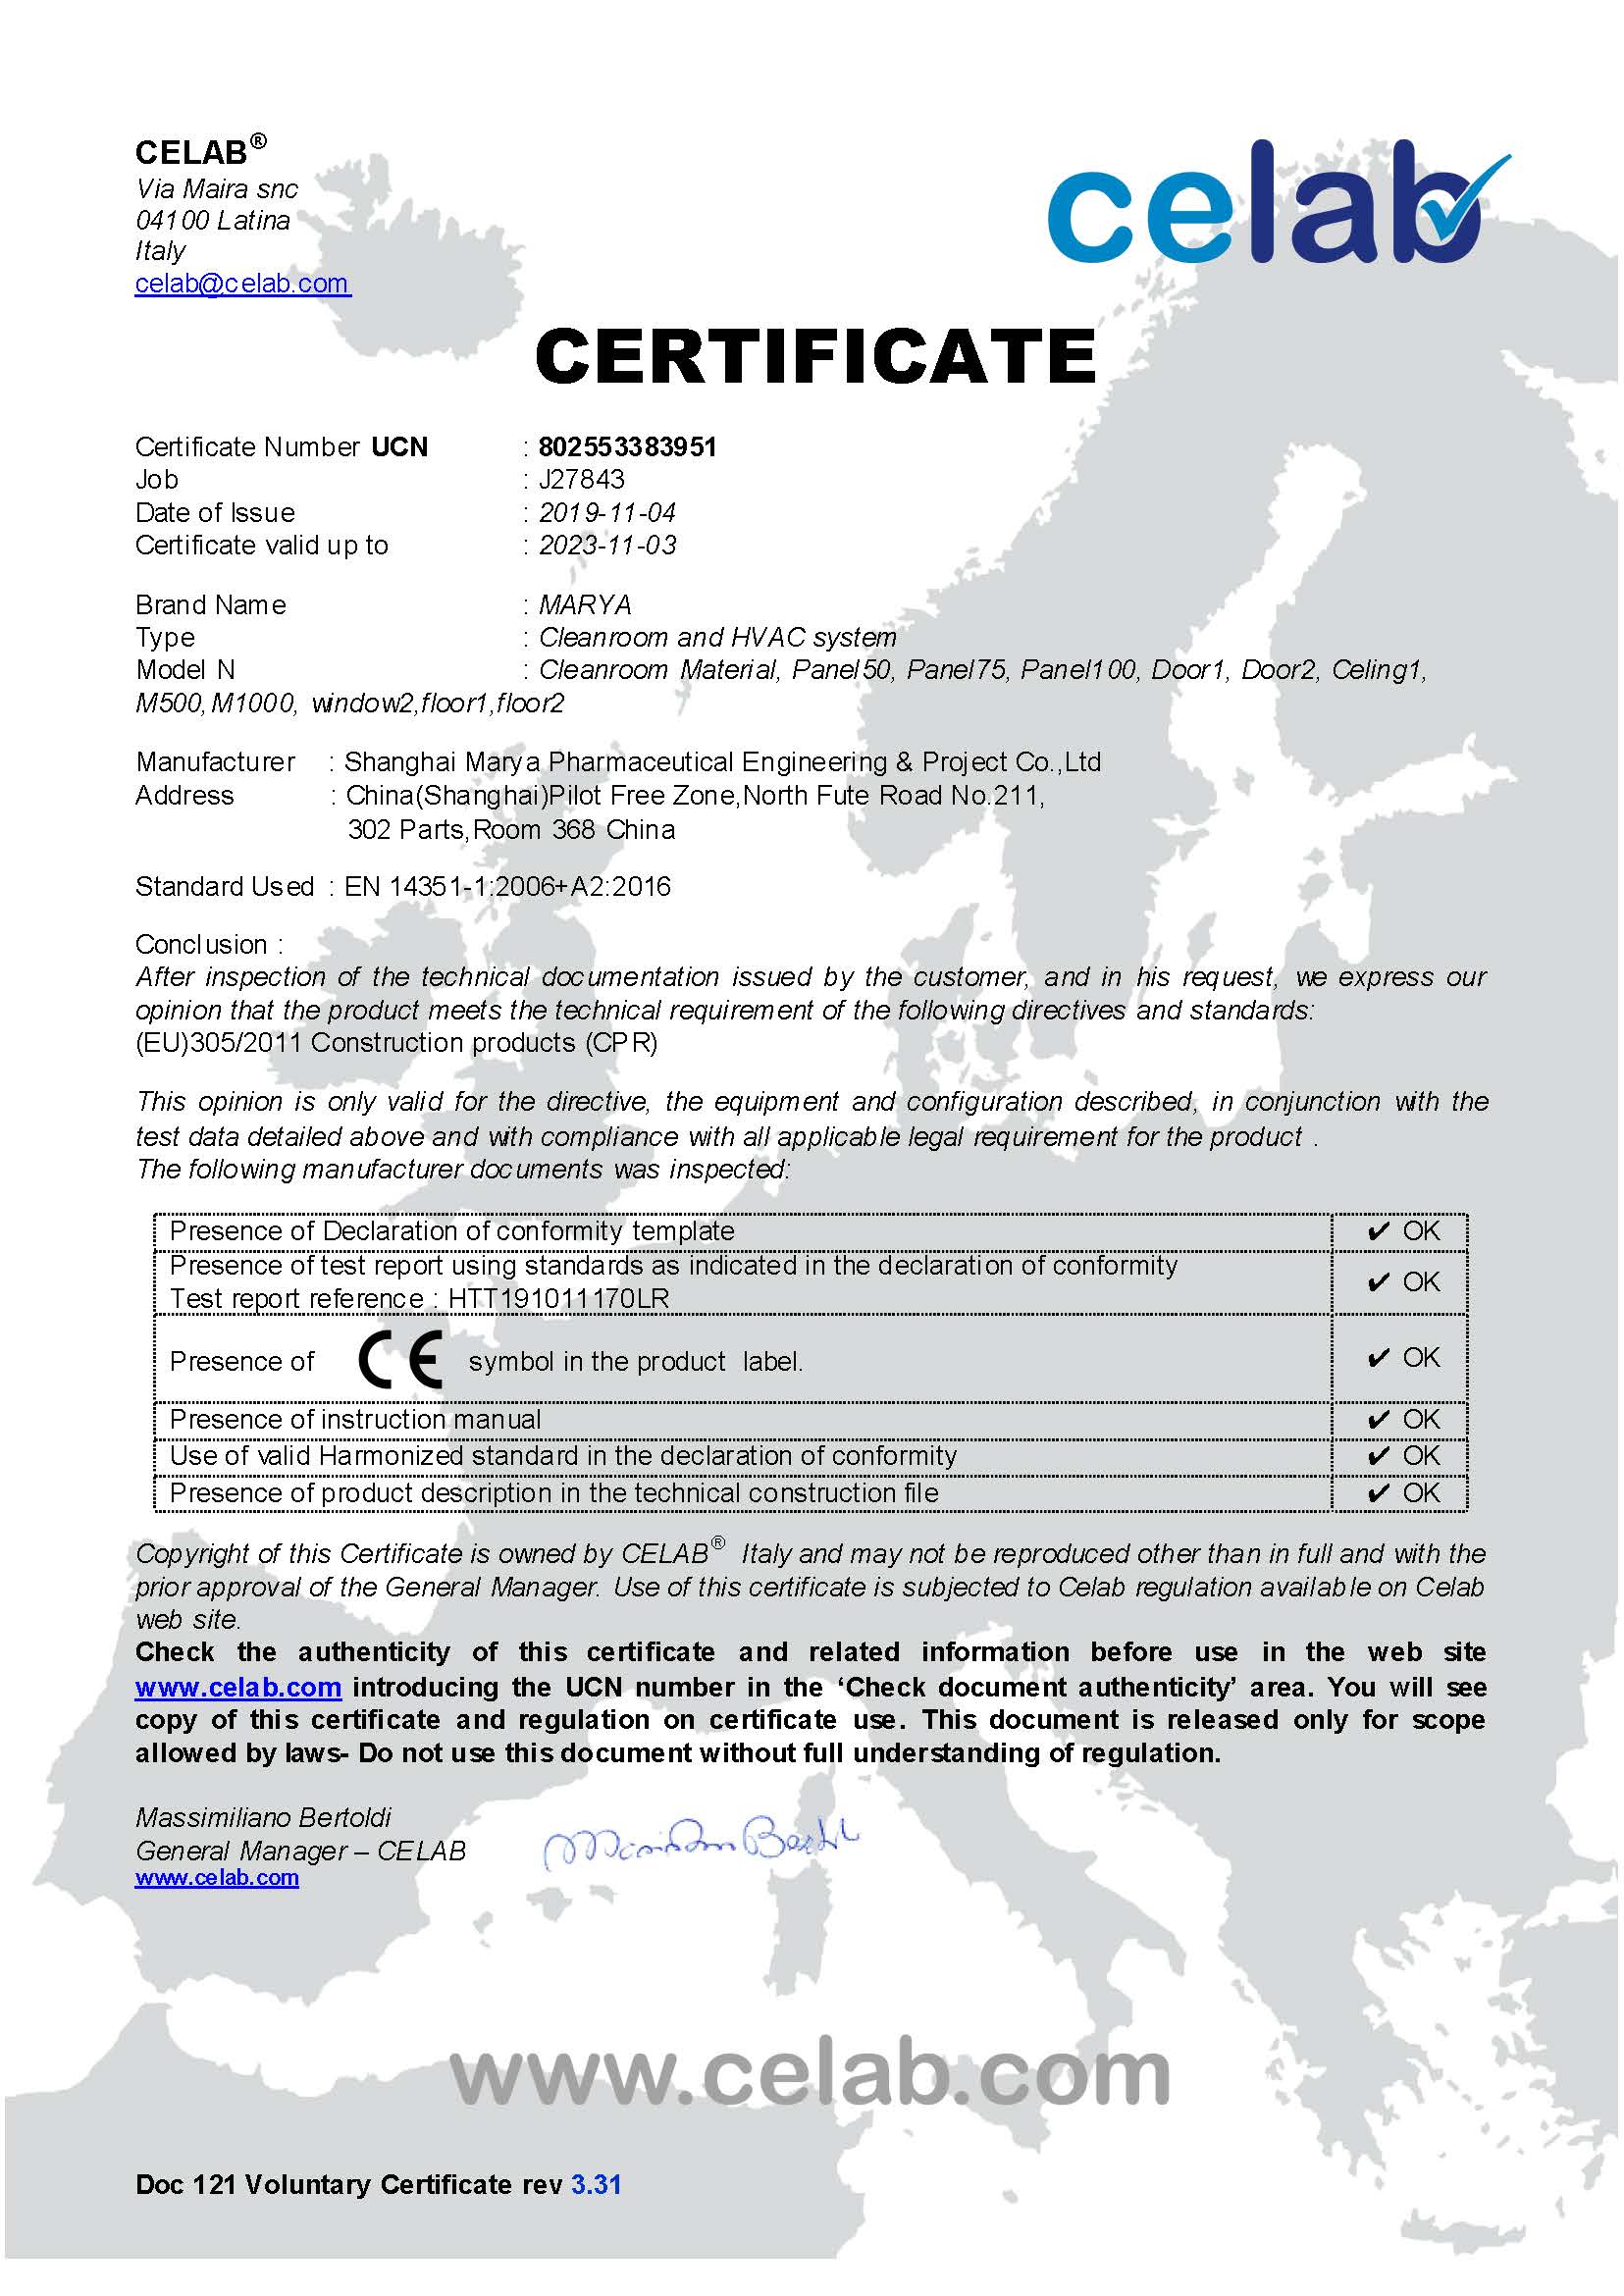 上海玛衙于2019年11月4日获得产品的CE证书